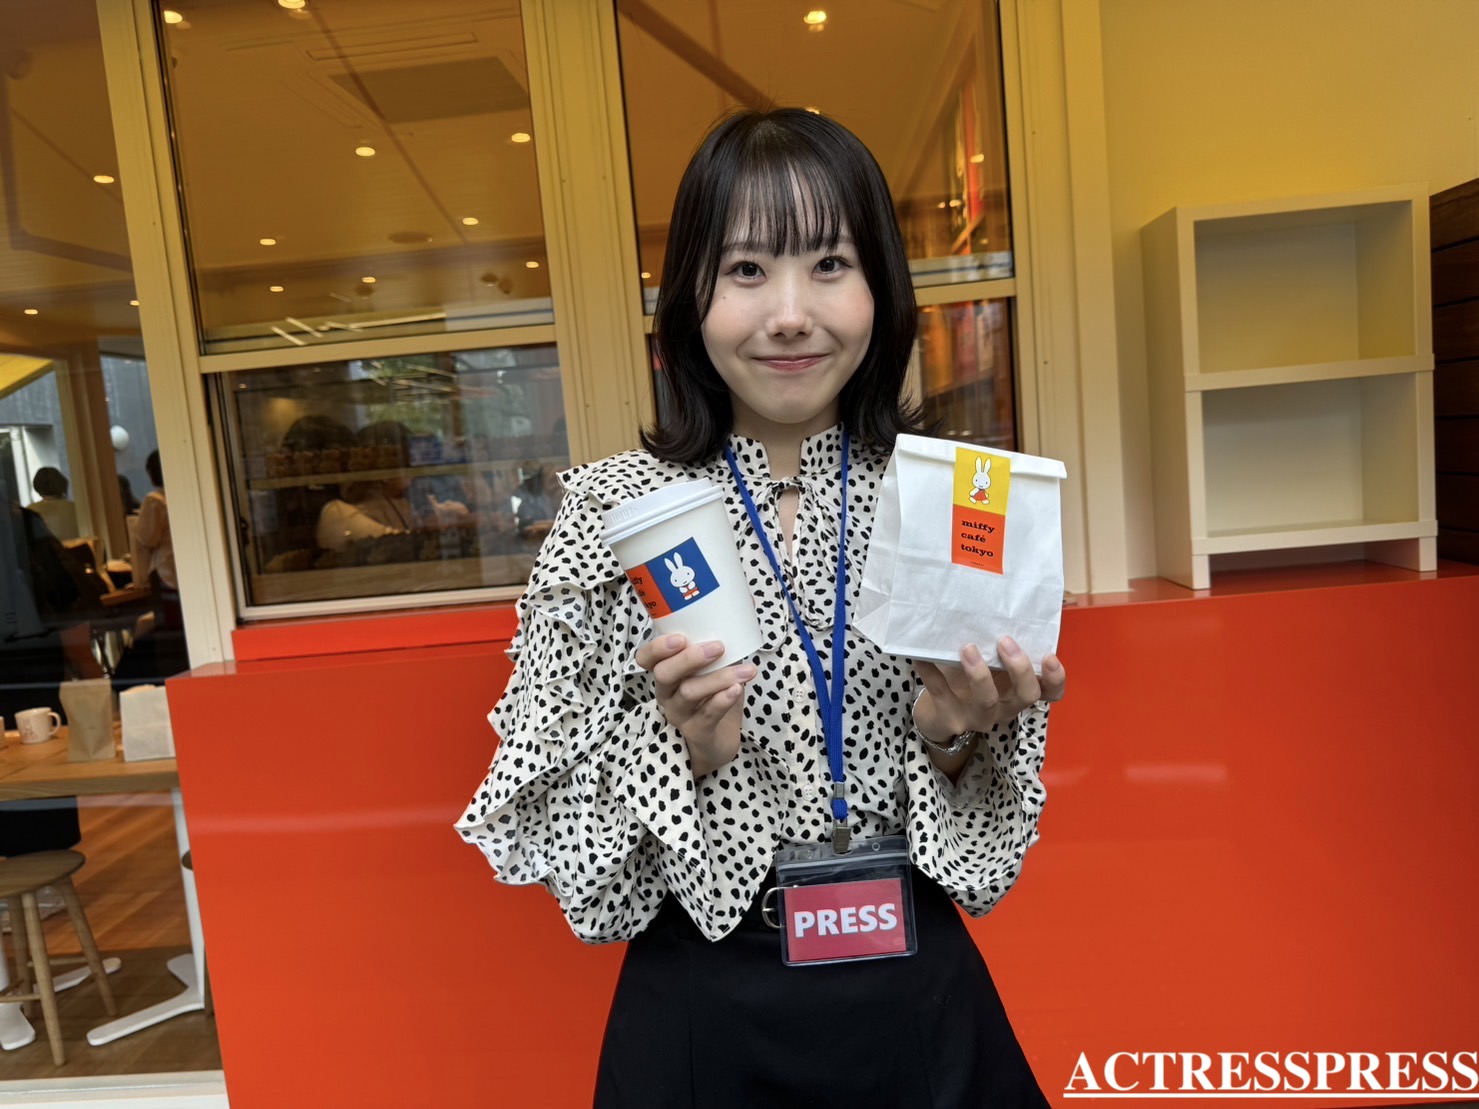 増田ほの香（ACTRESS PRESS REPORTER（アクトレスプレス リポーター）in miffy café tokyo（ミッフィーカフェ トーキョー）​​代官山駅